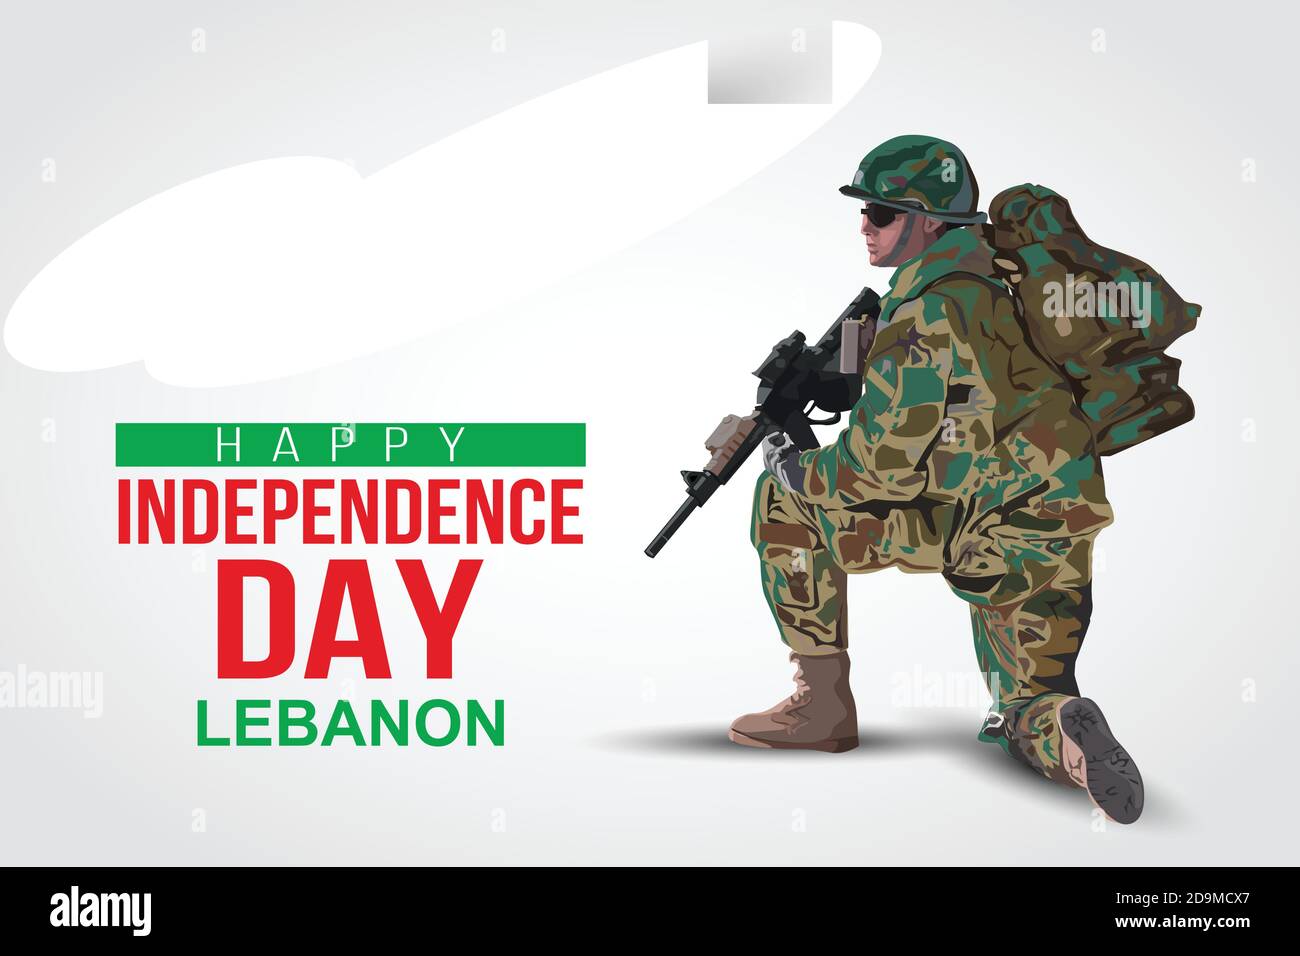 Illustration des 22. November Hintergrund zum Happy Independence Day des Libanon. Ein Soldat mit Waffe und Flagge. Vektorgrafik. Stock Vektor